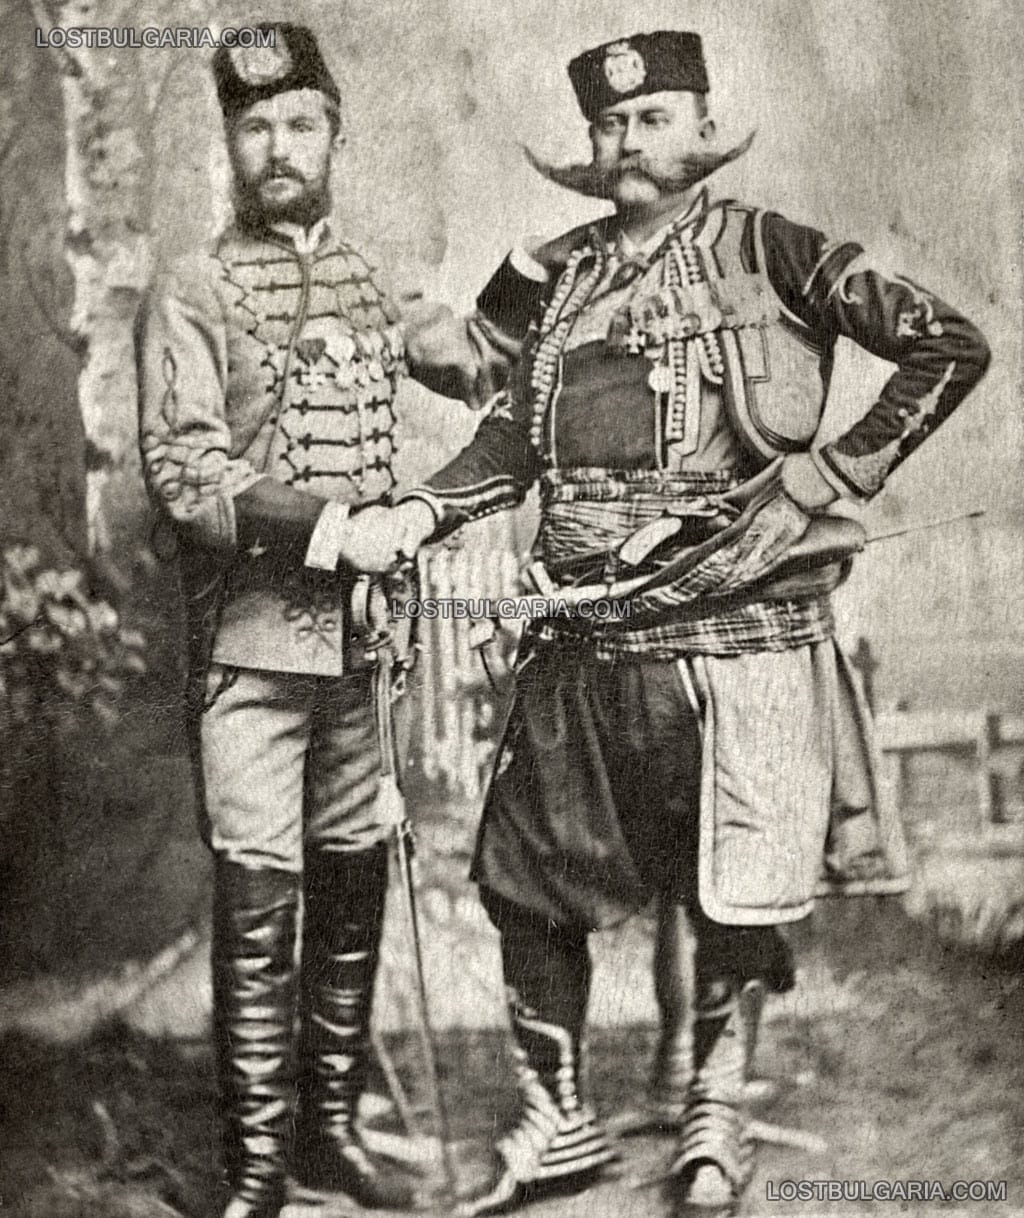 Димитър Куртев, водач на Съединението от Сливен и телохранителя на Княз Батенберг Христо Карагьозов, септември 1885 г.